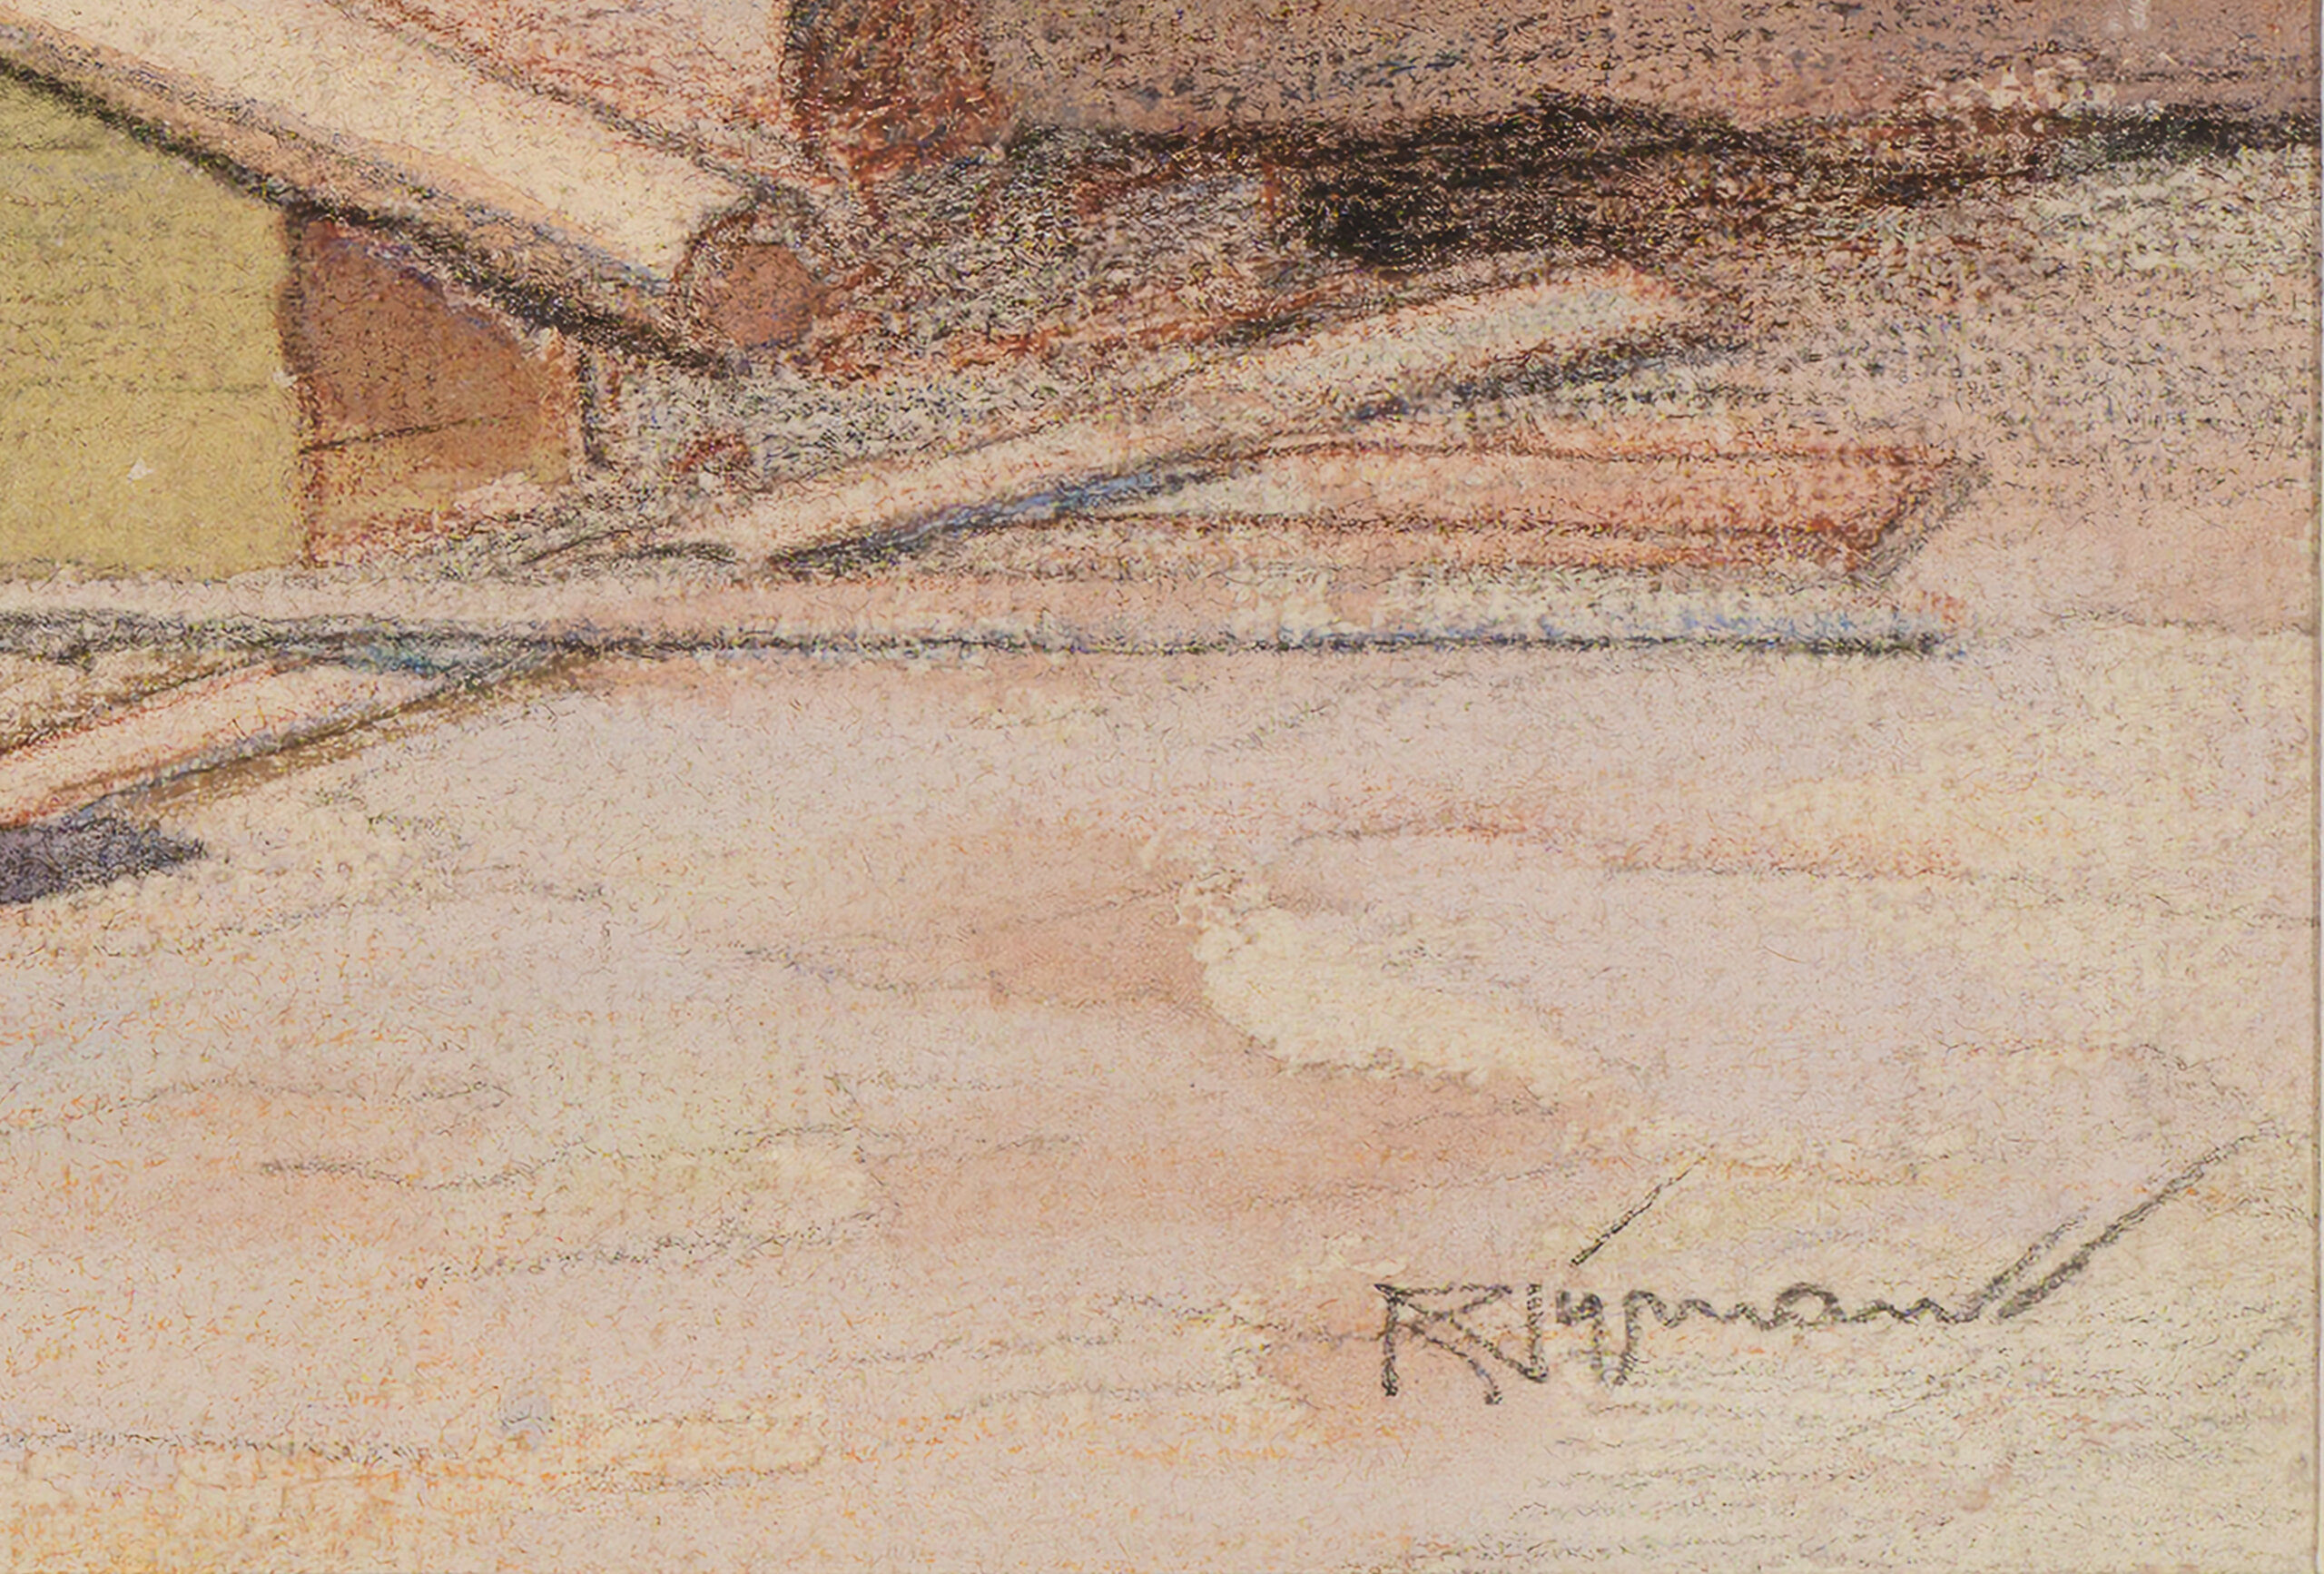 Roman Nyman “Kaberneeme võrgukuurid”, 1940. Km 28,5 x 37 cm.